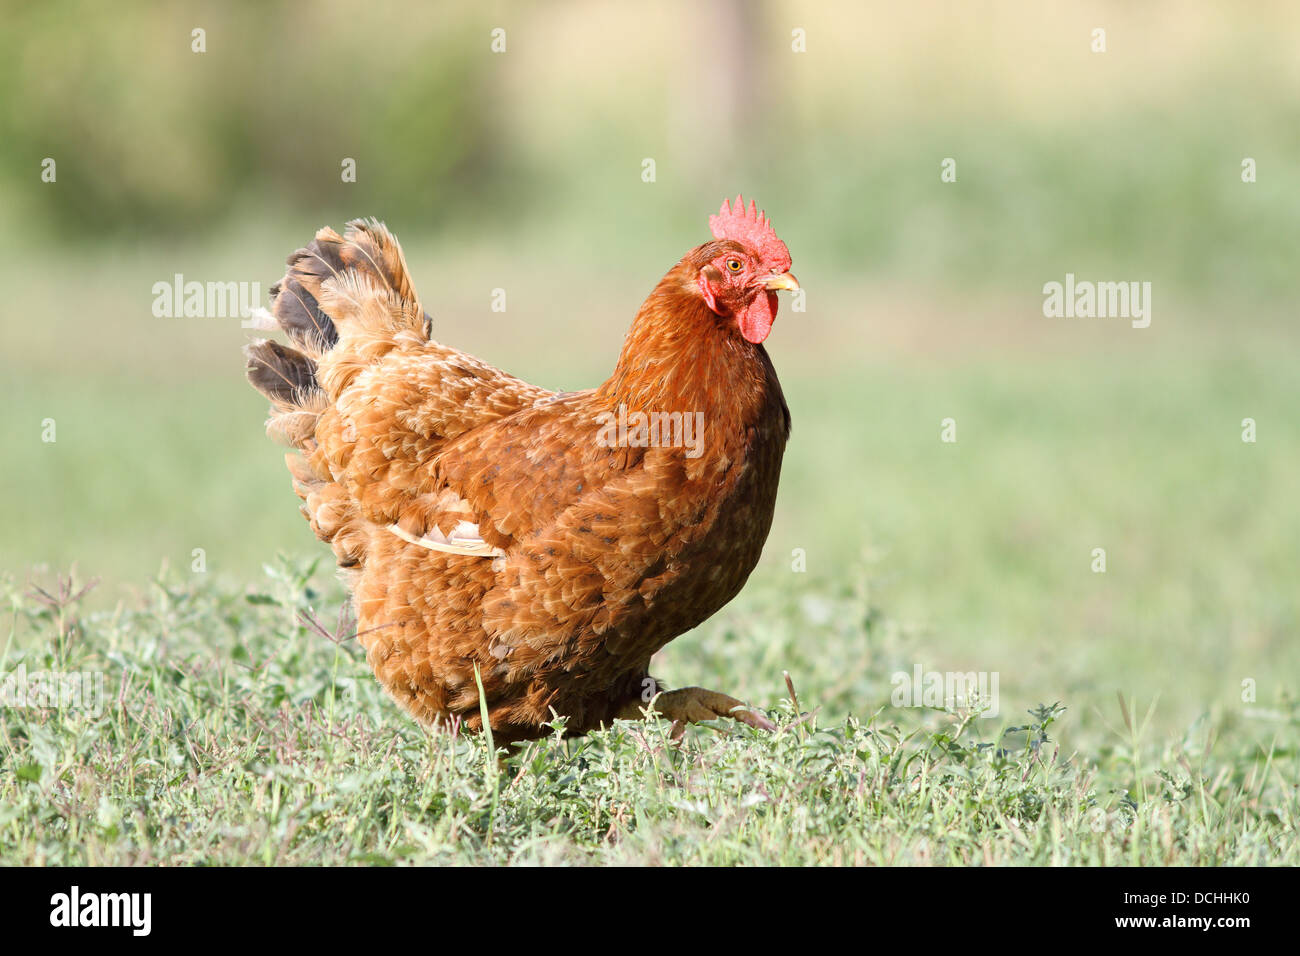 bunte Henne auf grünem Rasen - kurze Schärfentiefe Stockfoto